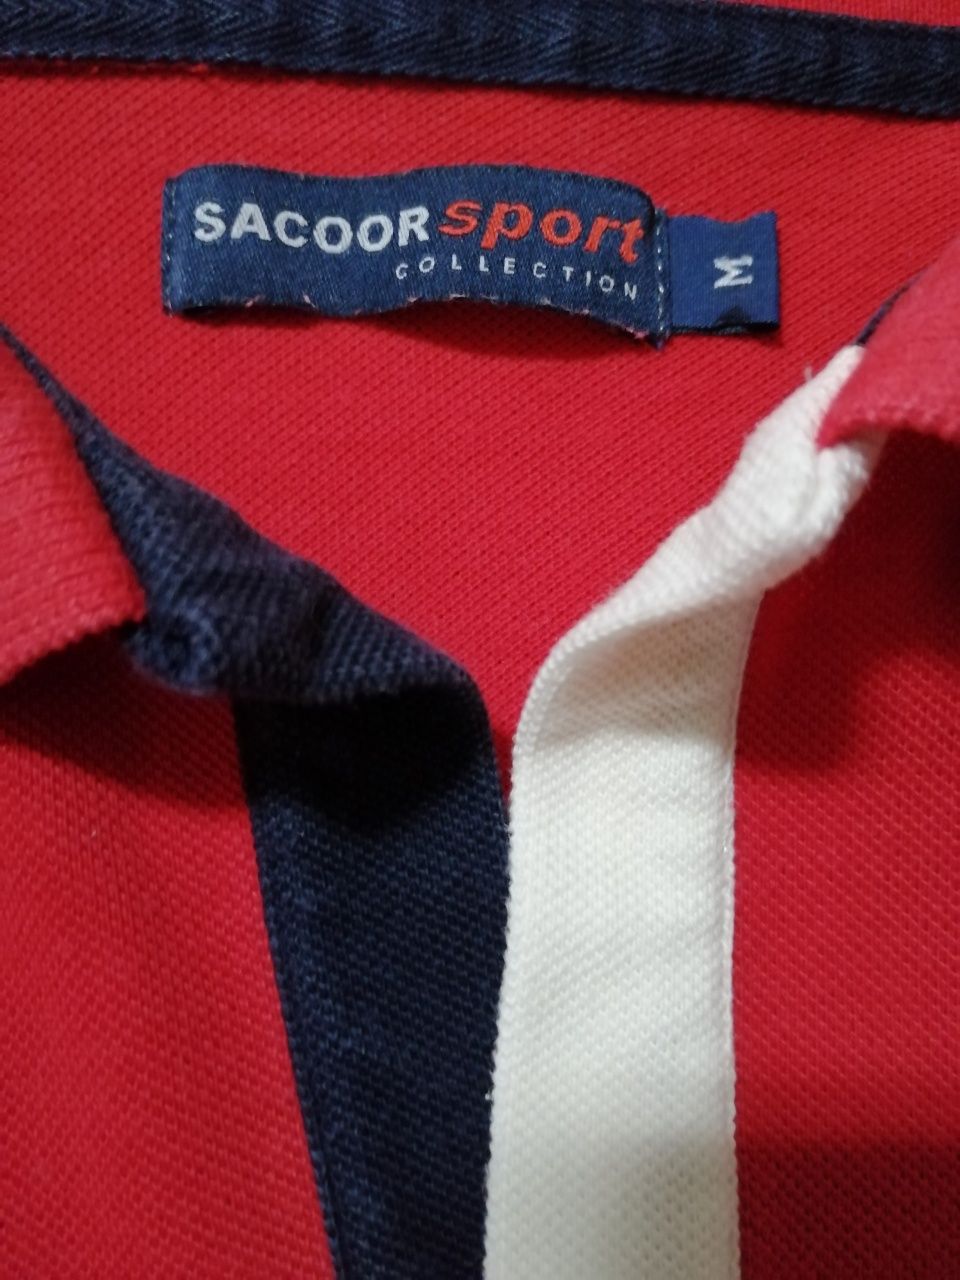 Polo Sacoor Sport collection